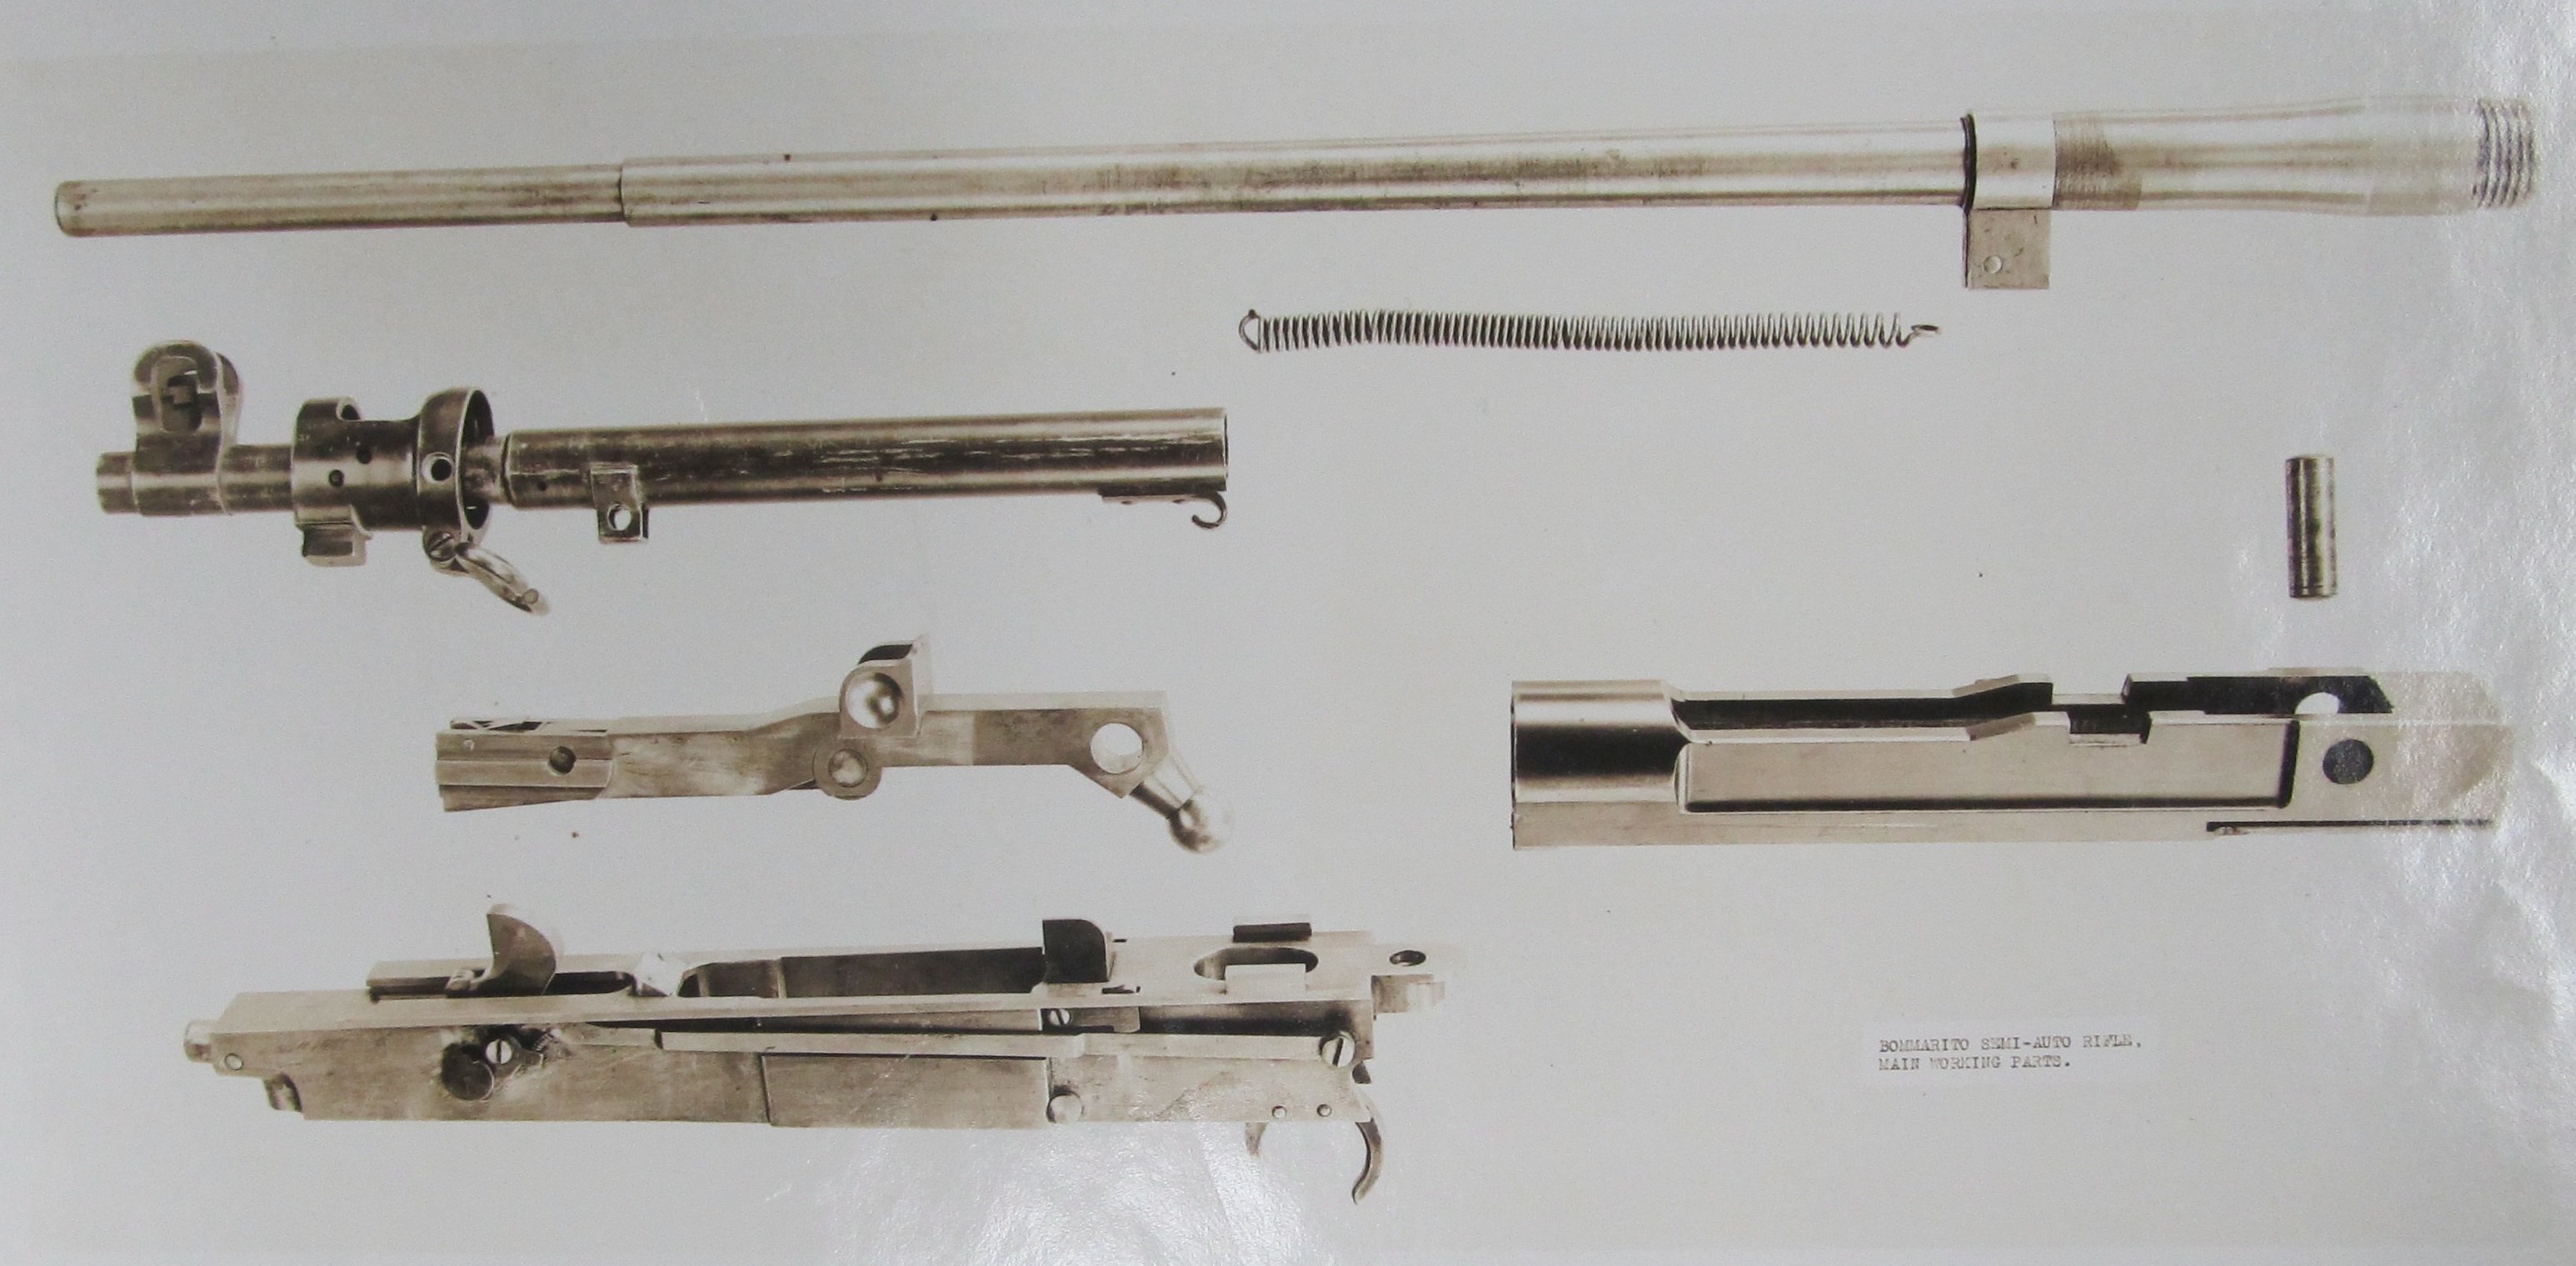 Bommarito rifle major components